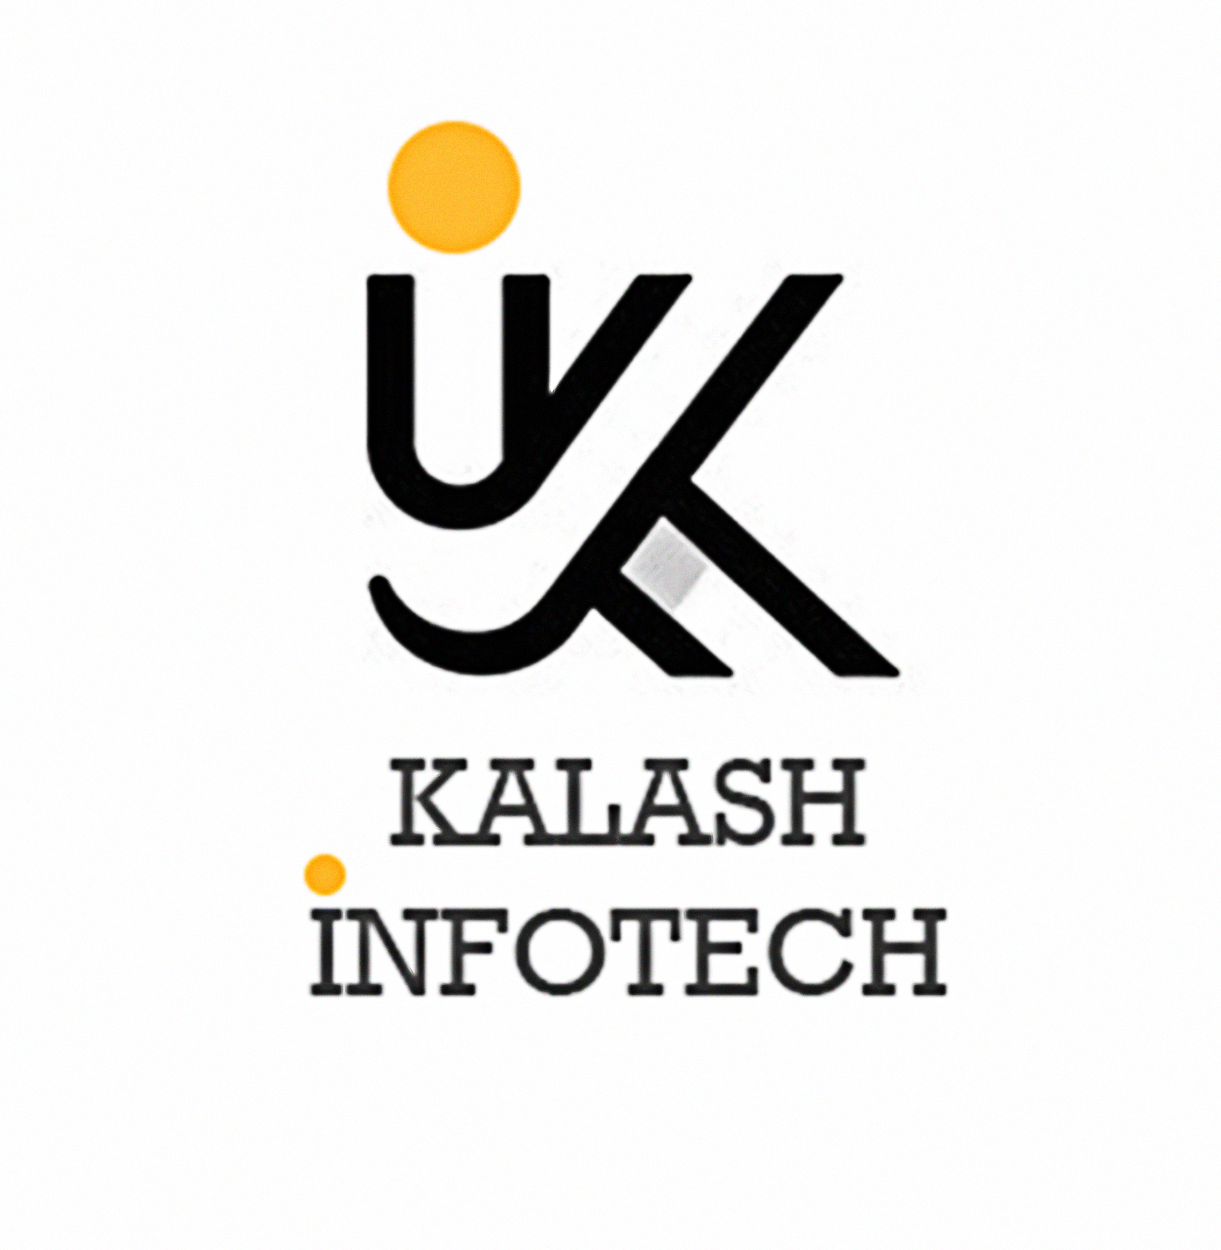 Kalash Infotech Logo 